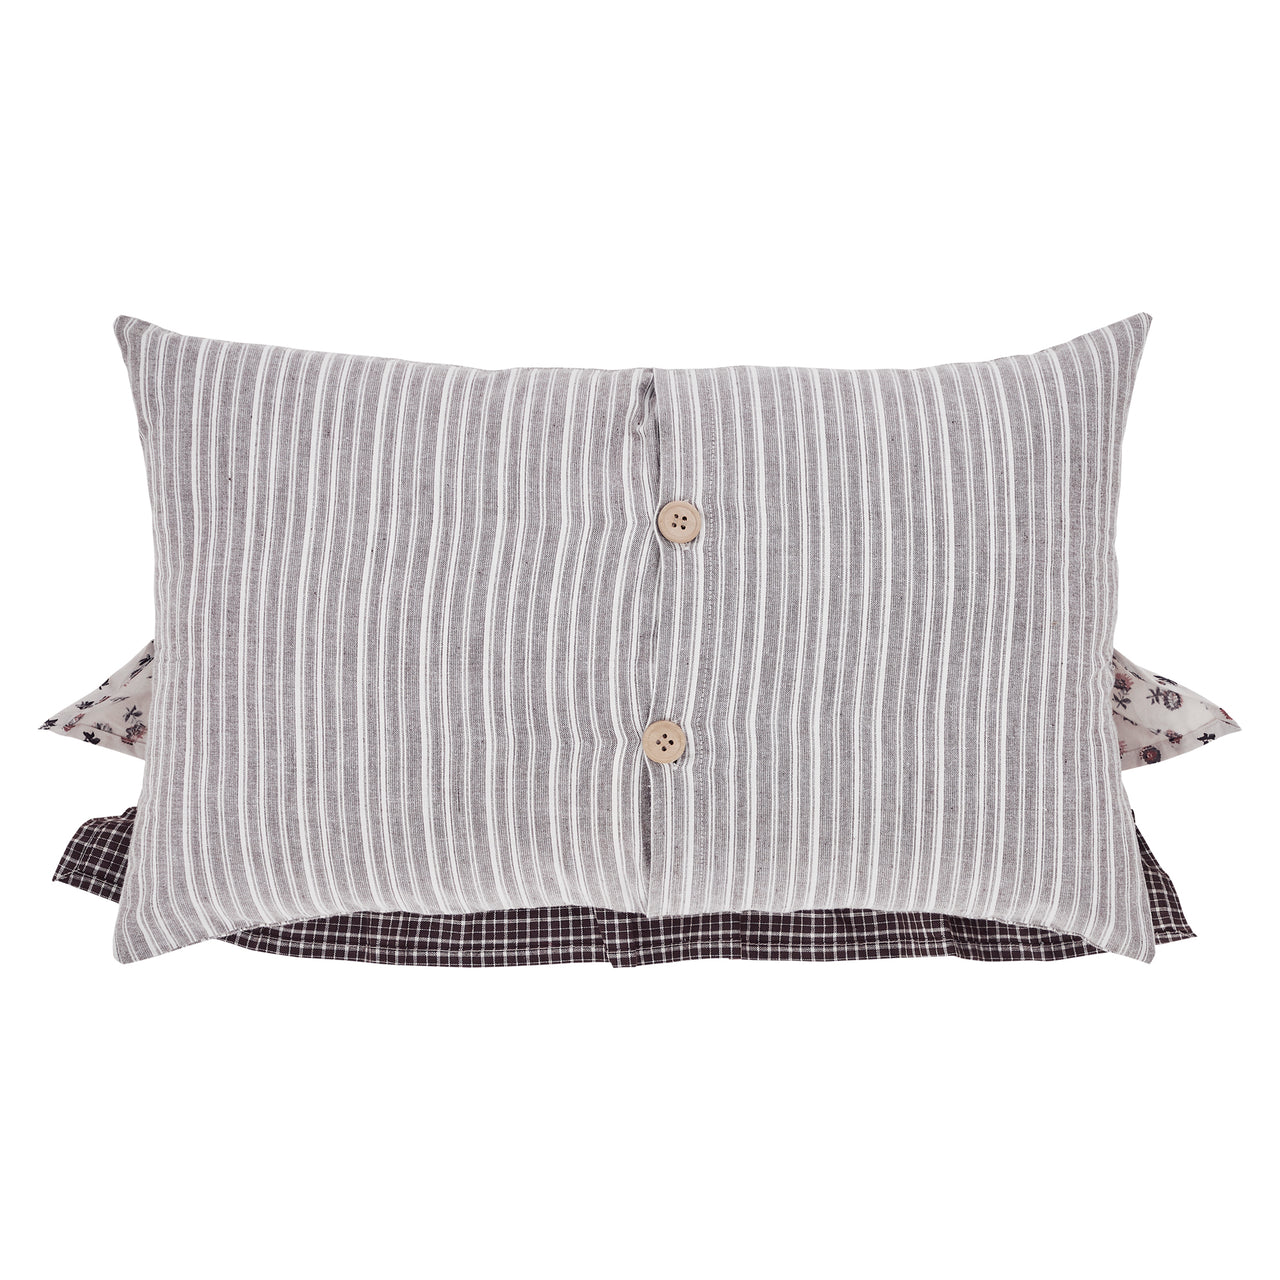 Florette Ruffled Pillow 14x22 VHC Brands